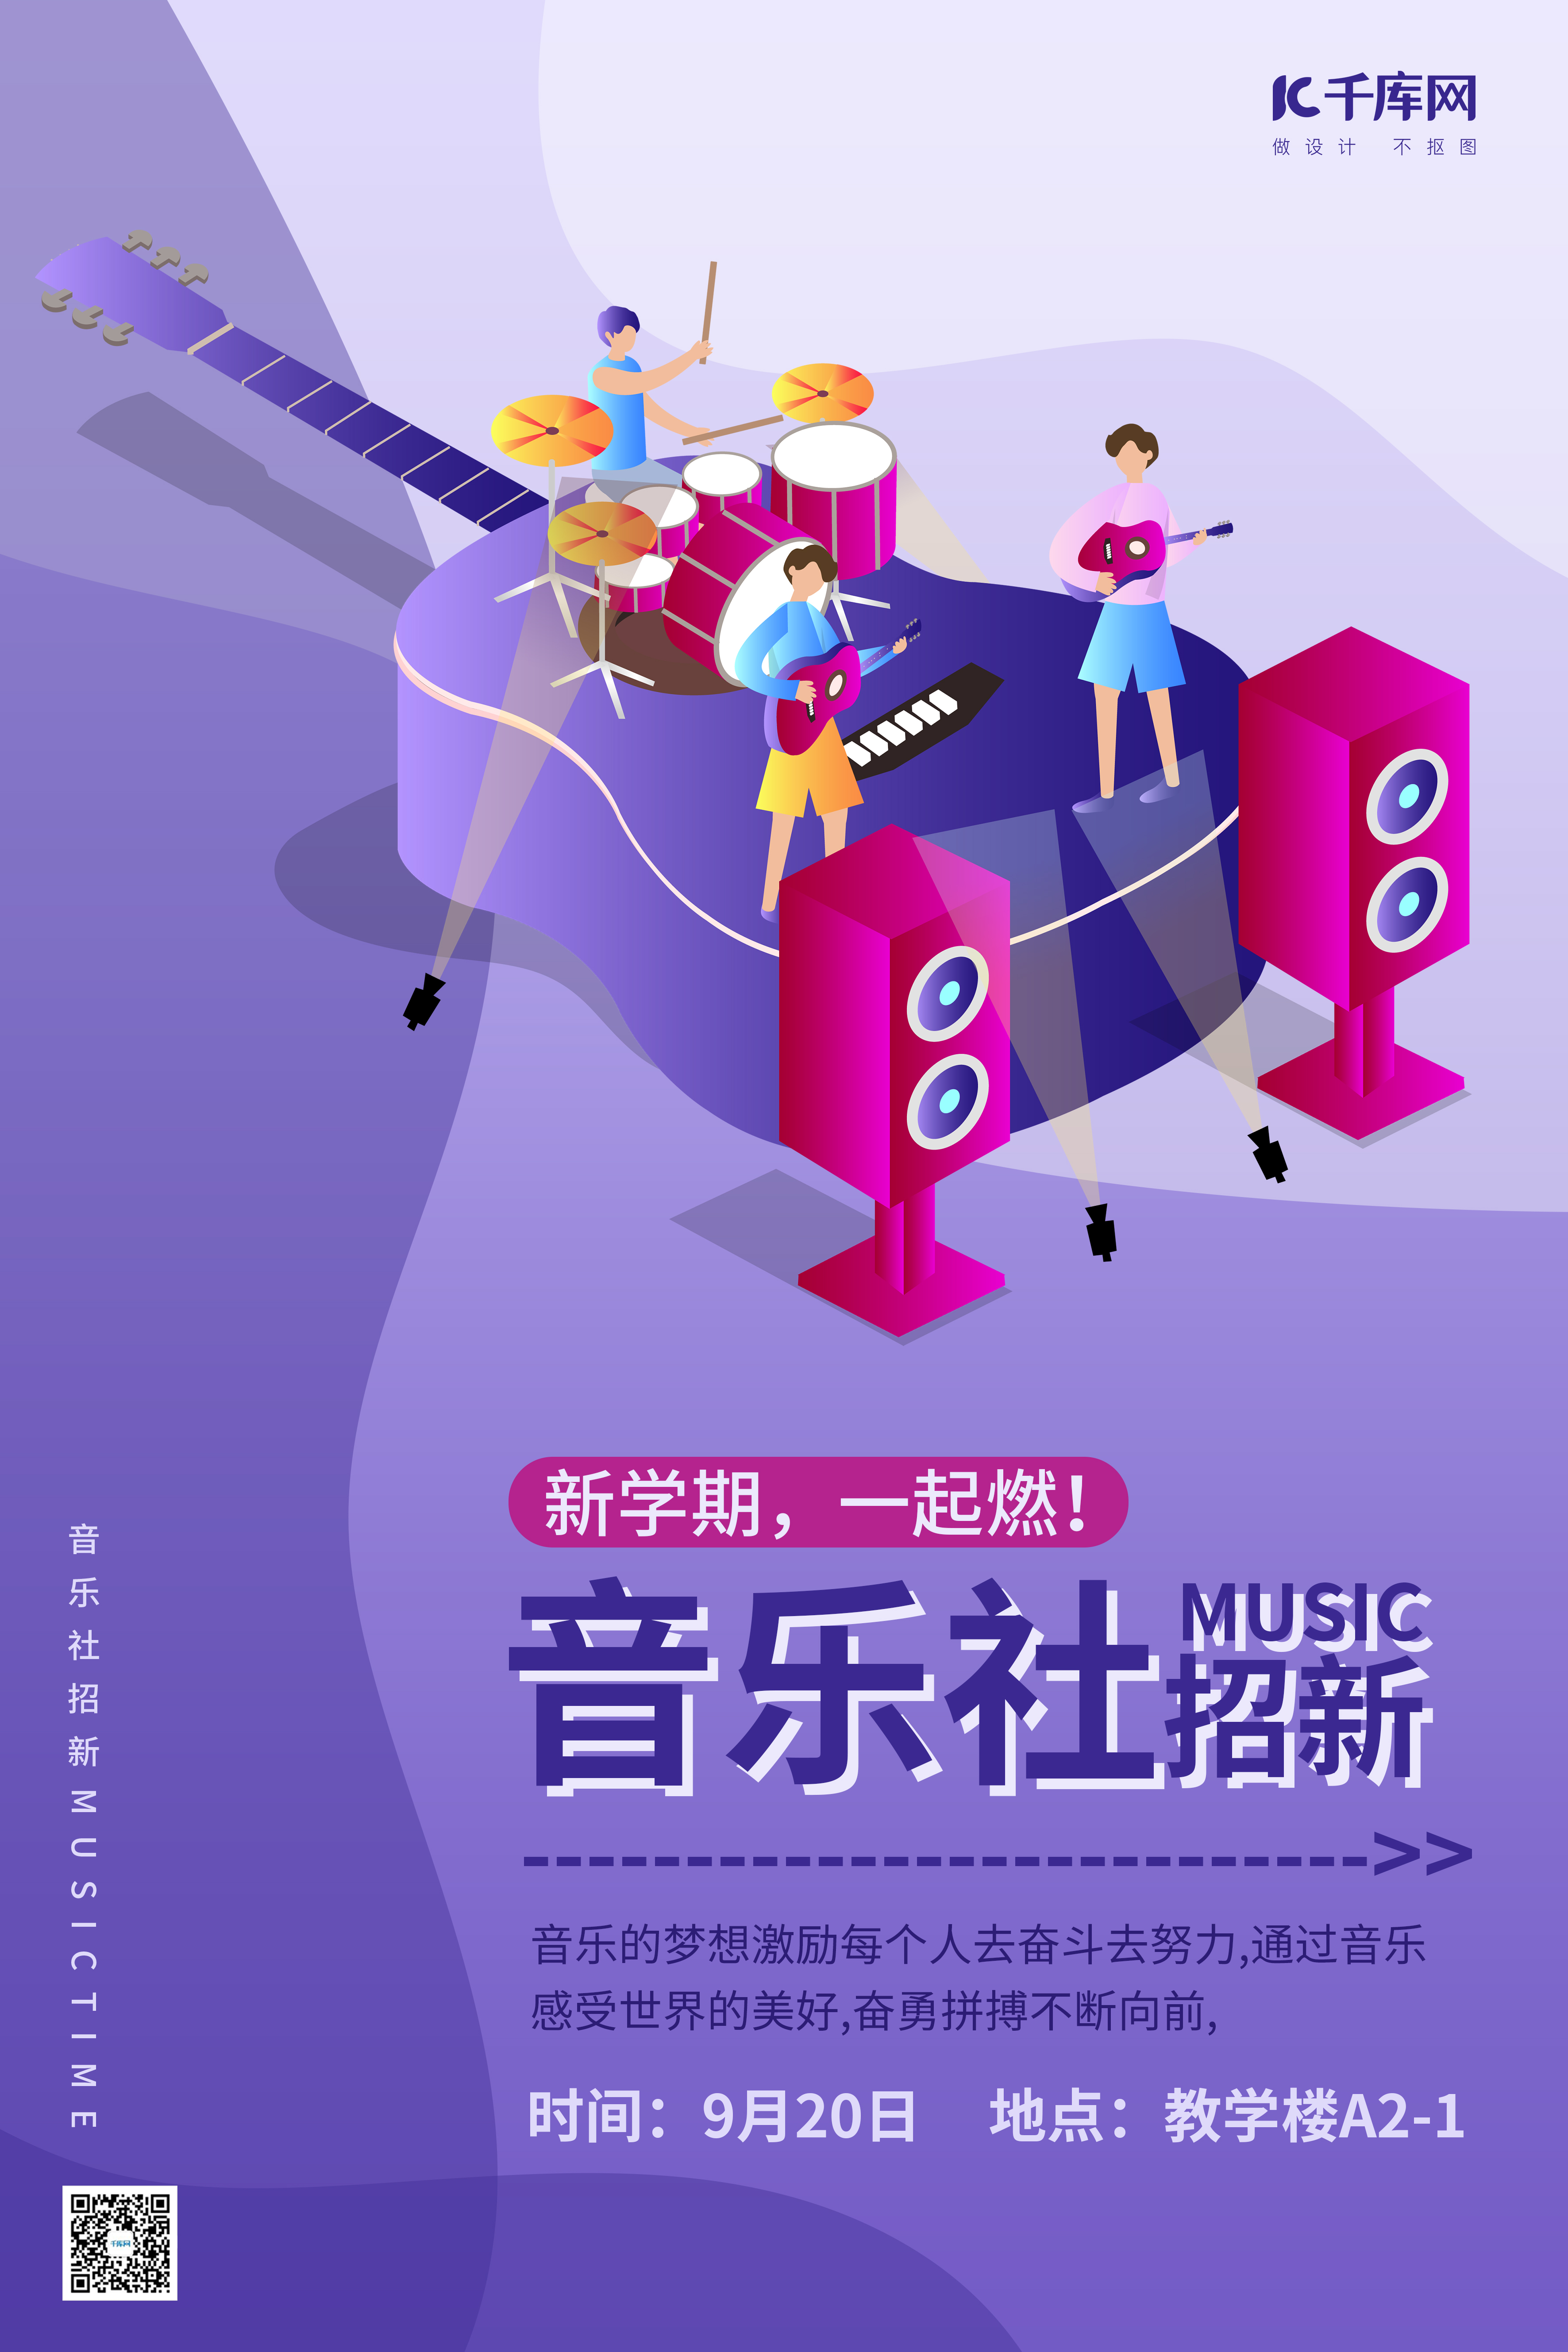 社团音乐社招新紫蓝色插画风海报图片